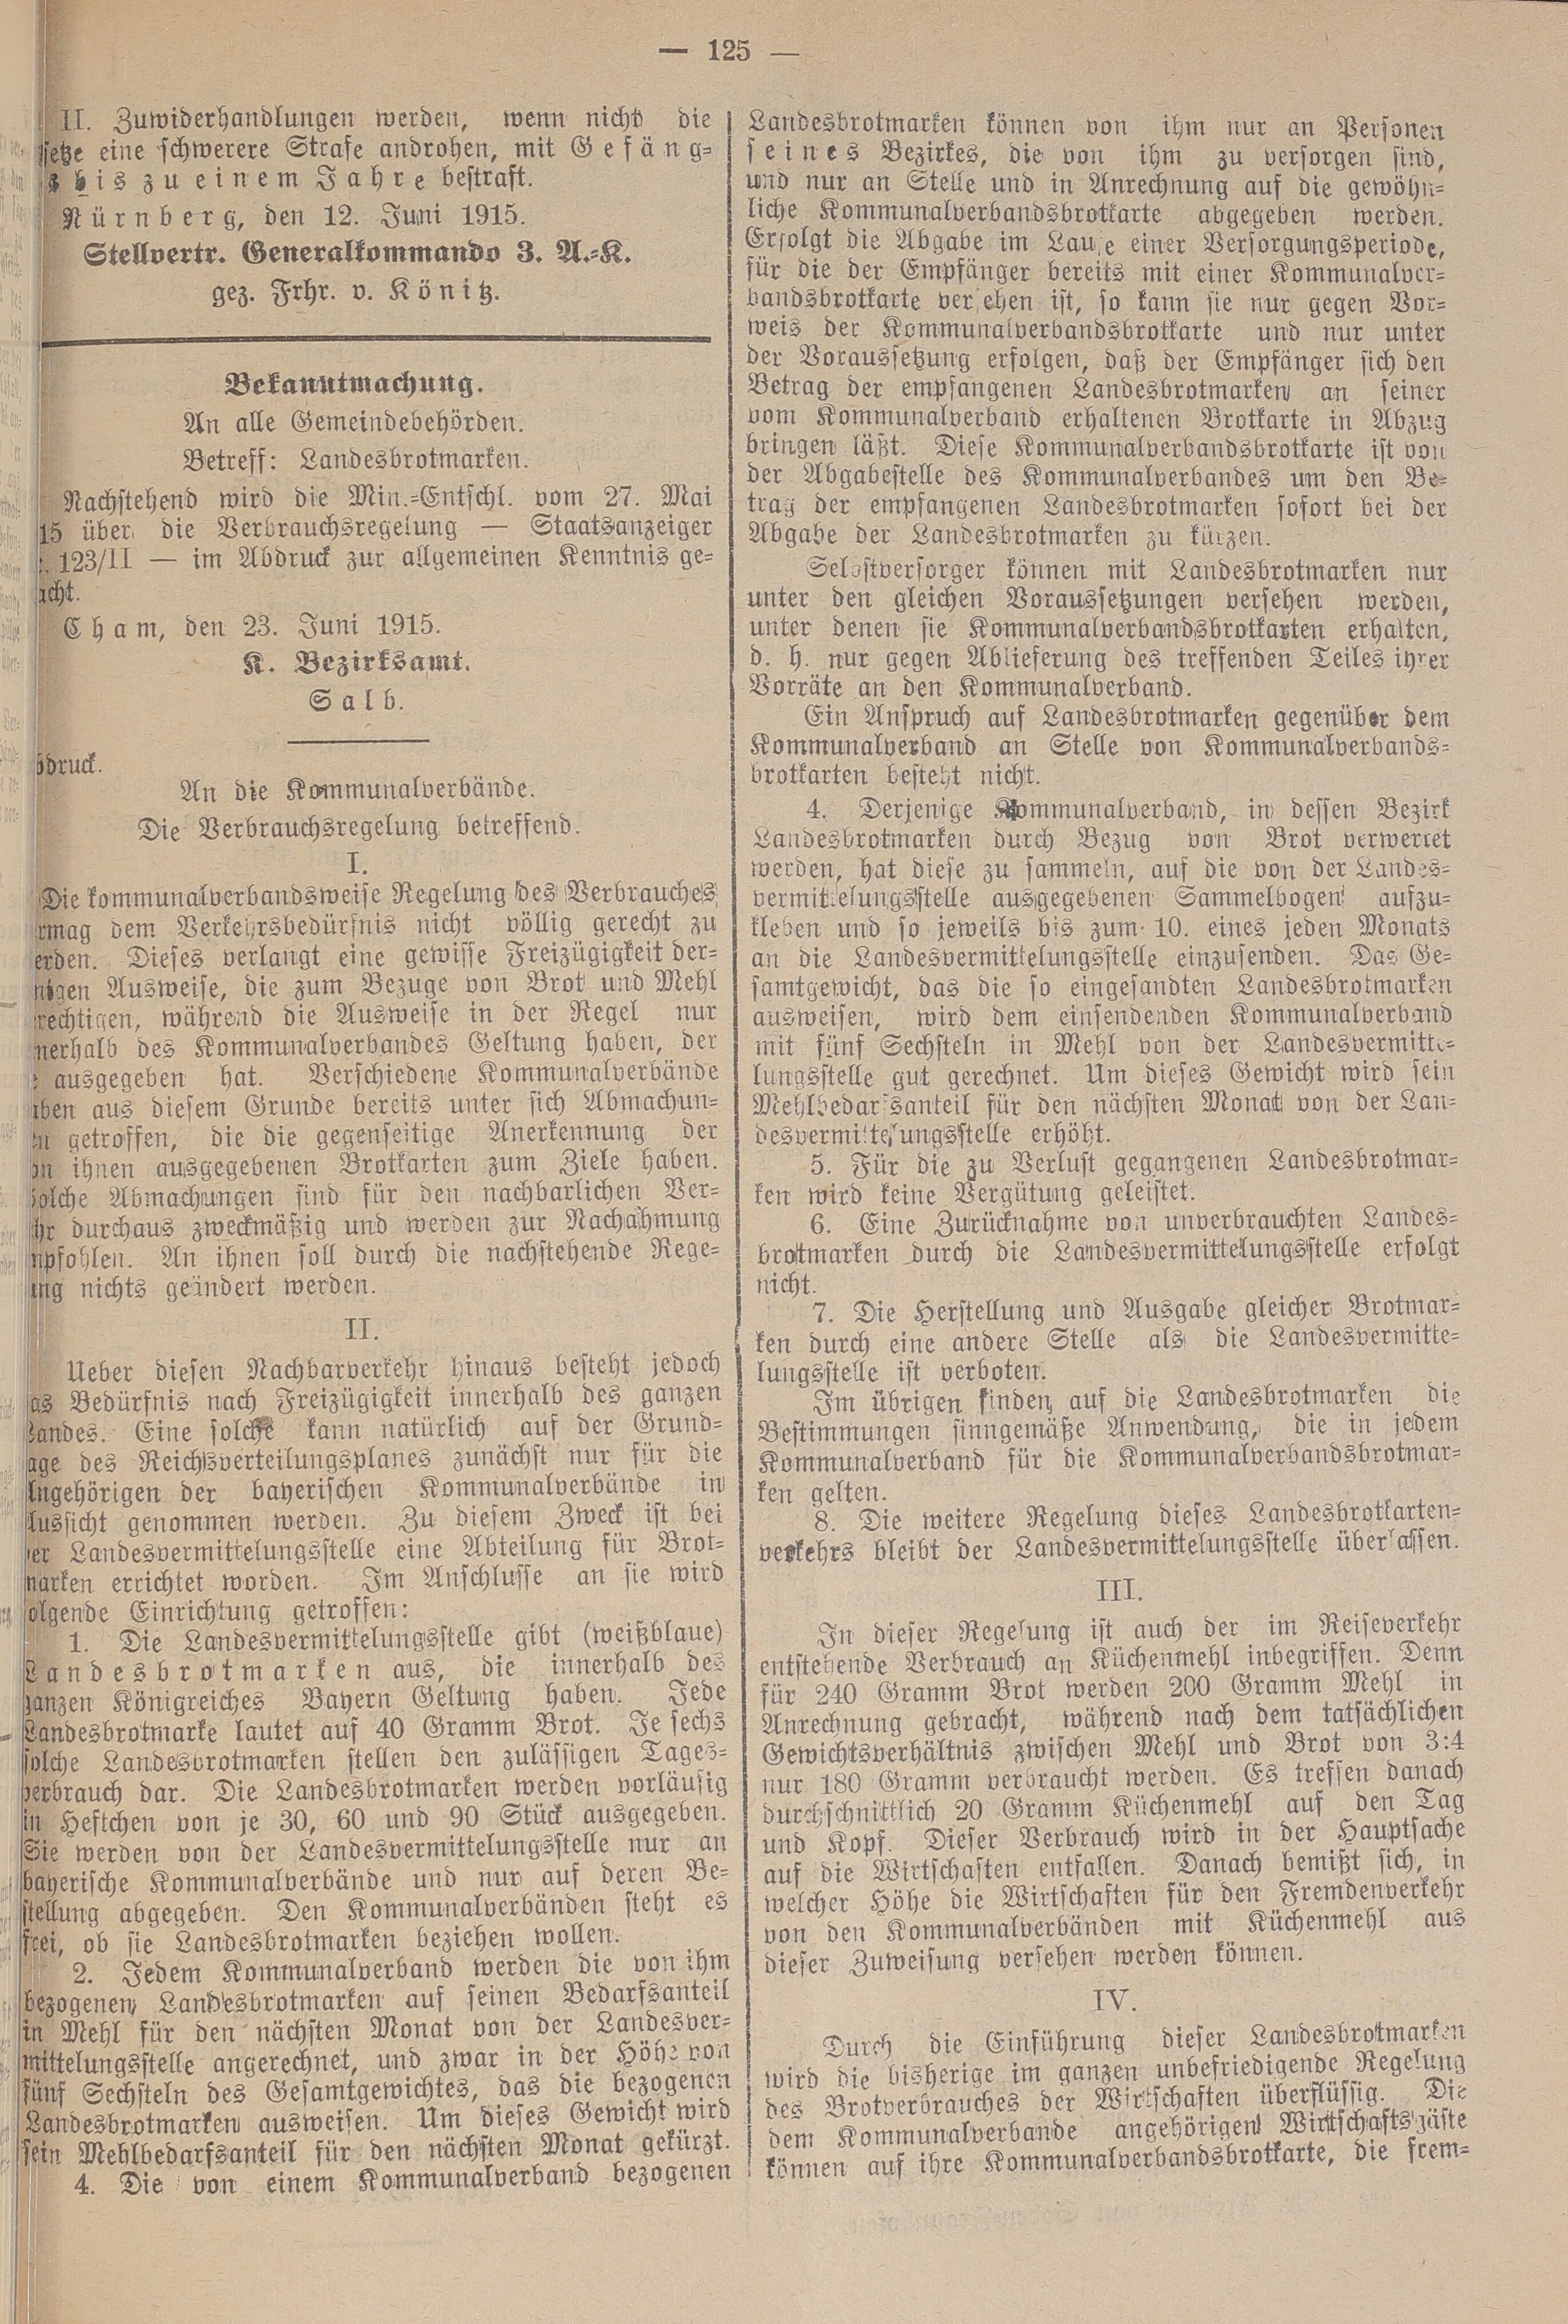 3. amtsblatt-cham-1915-06-24-n38_1230